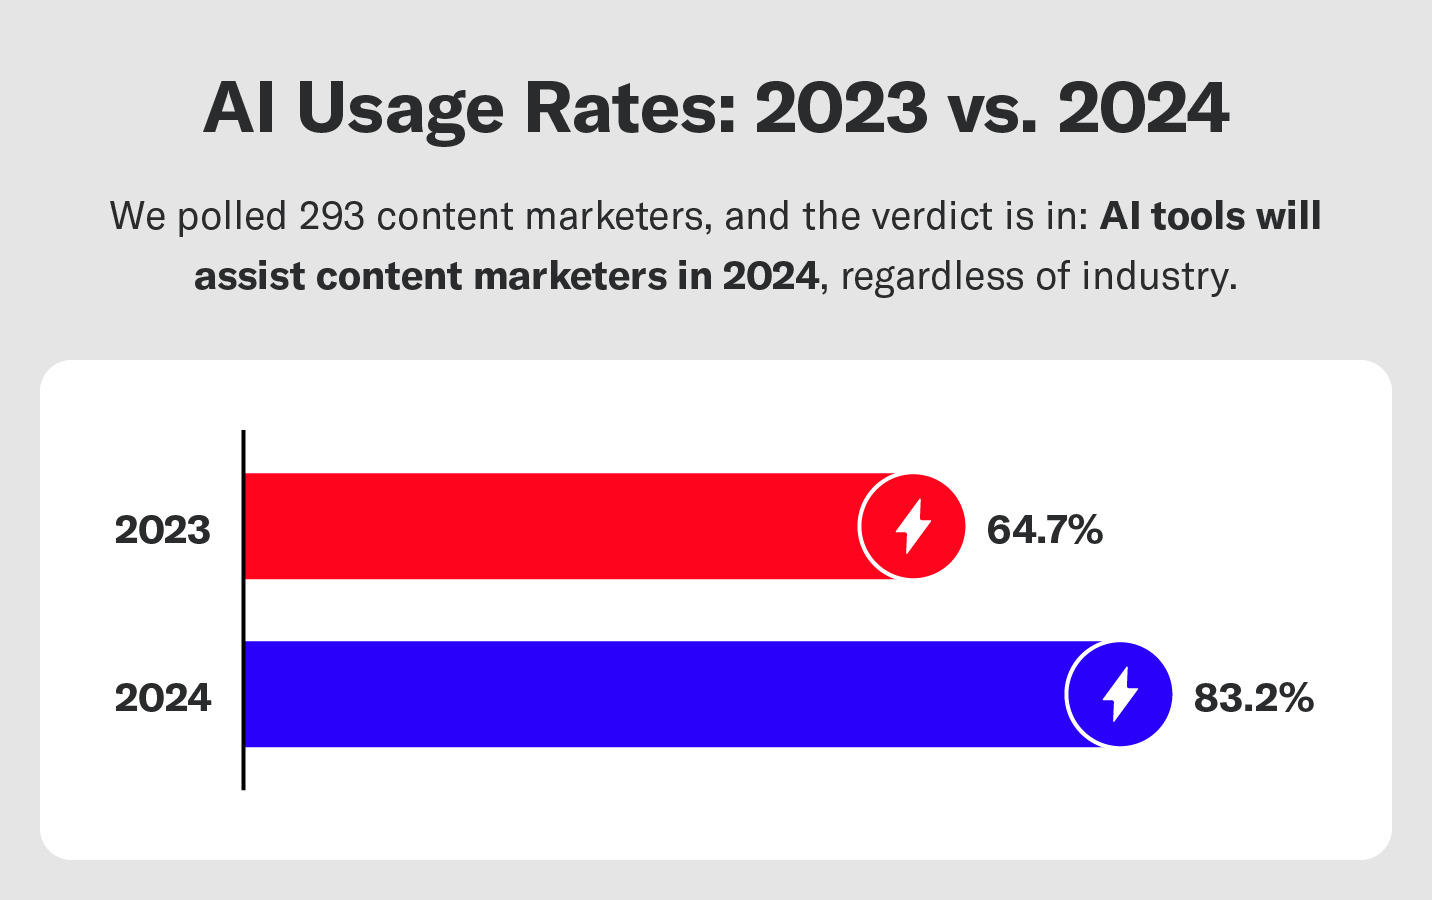 AI usage rates in 2024 vs. 2023